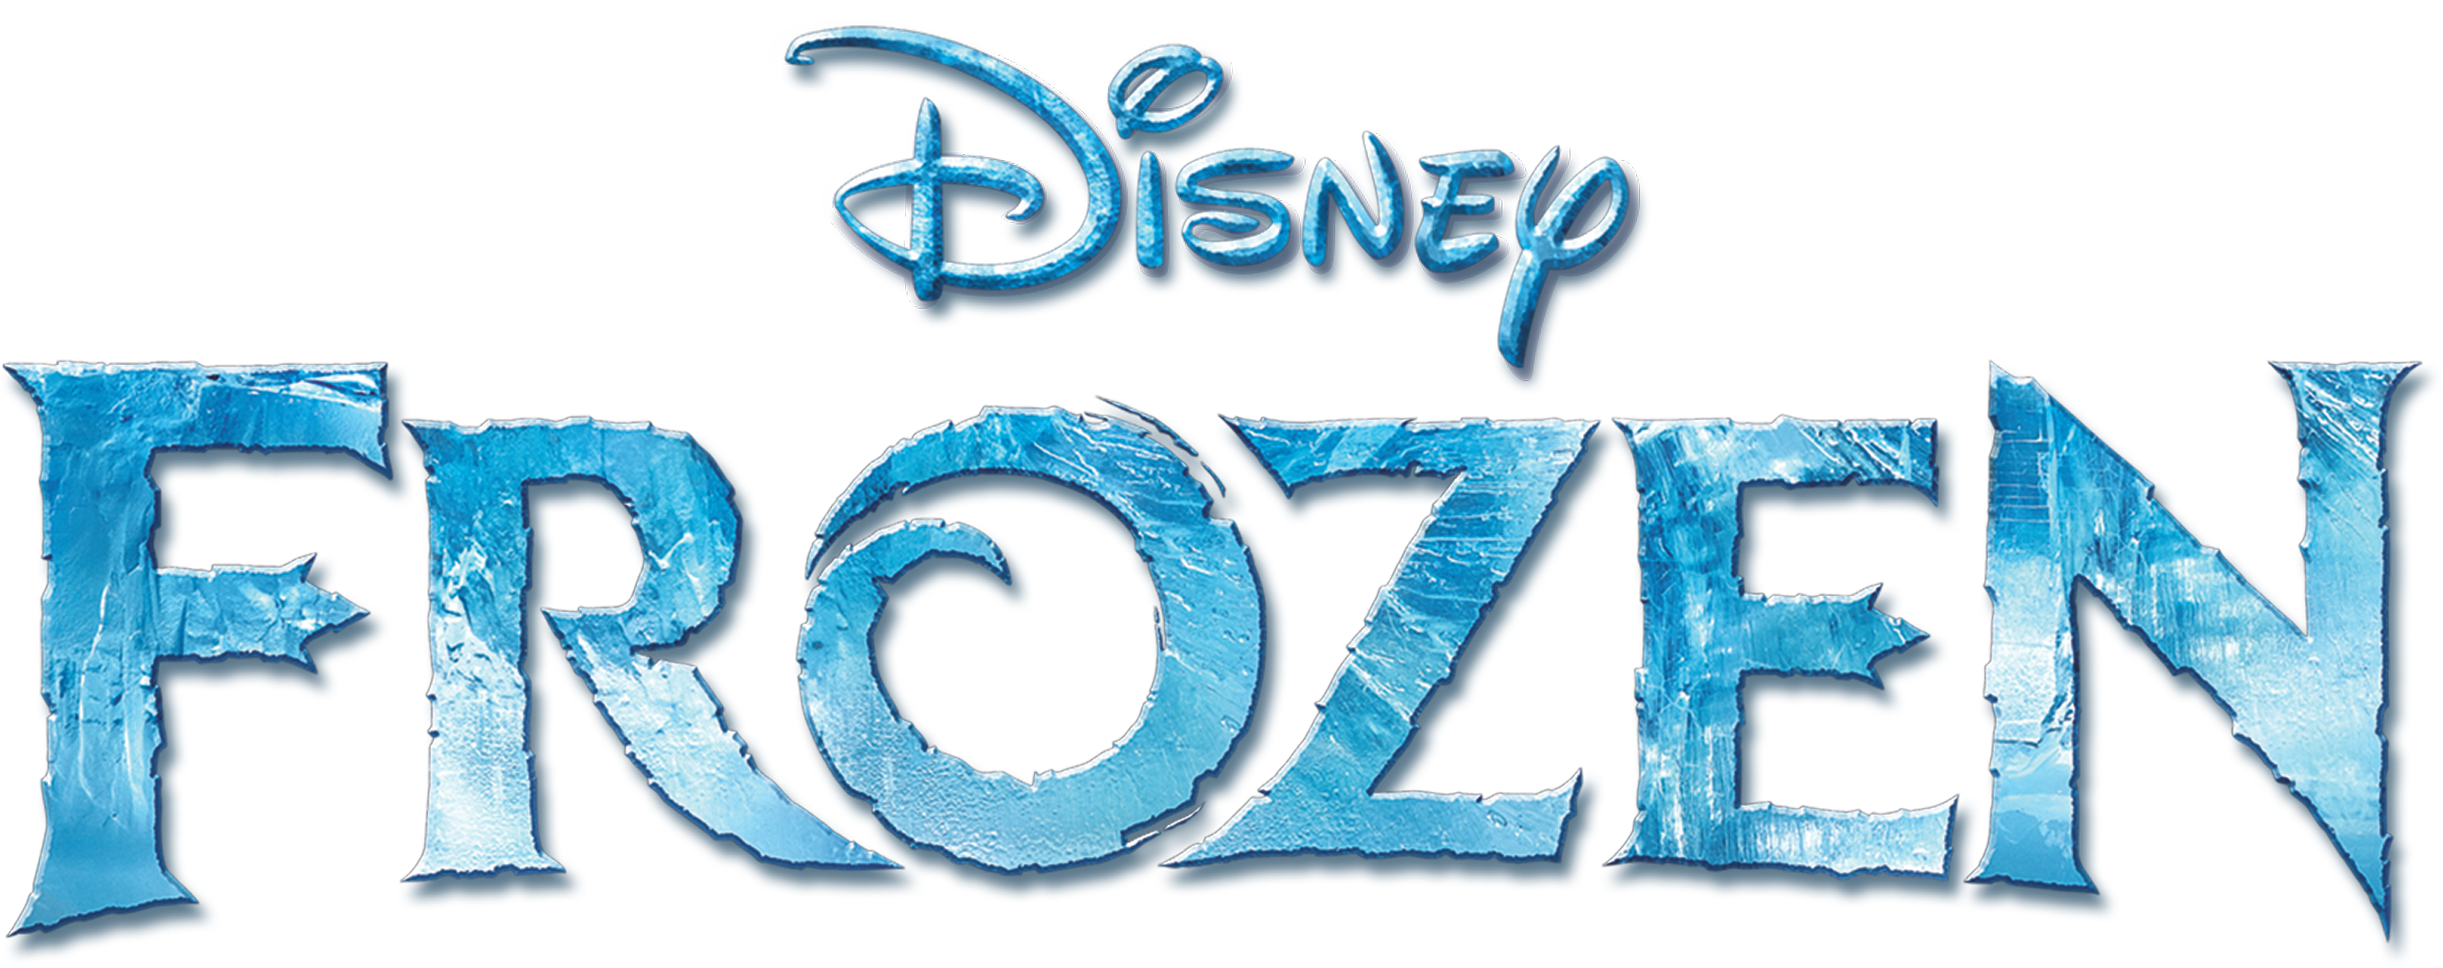 Frozen logo PNG transparent image download, size: 2443x968px